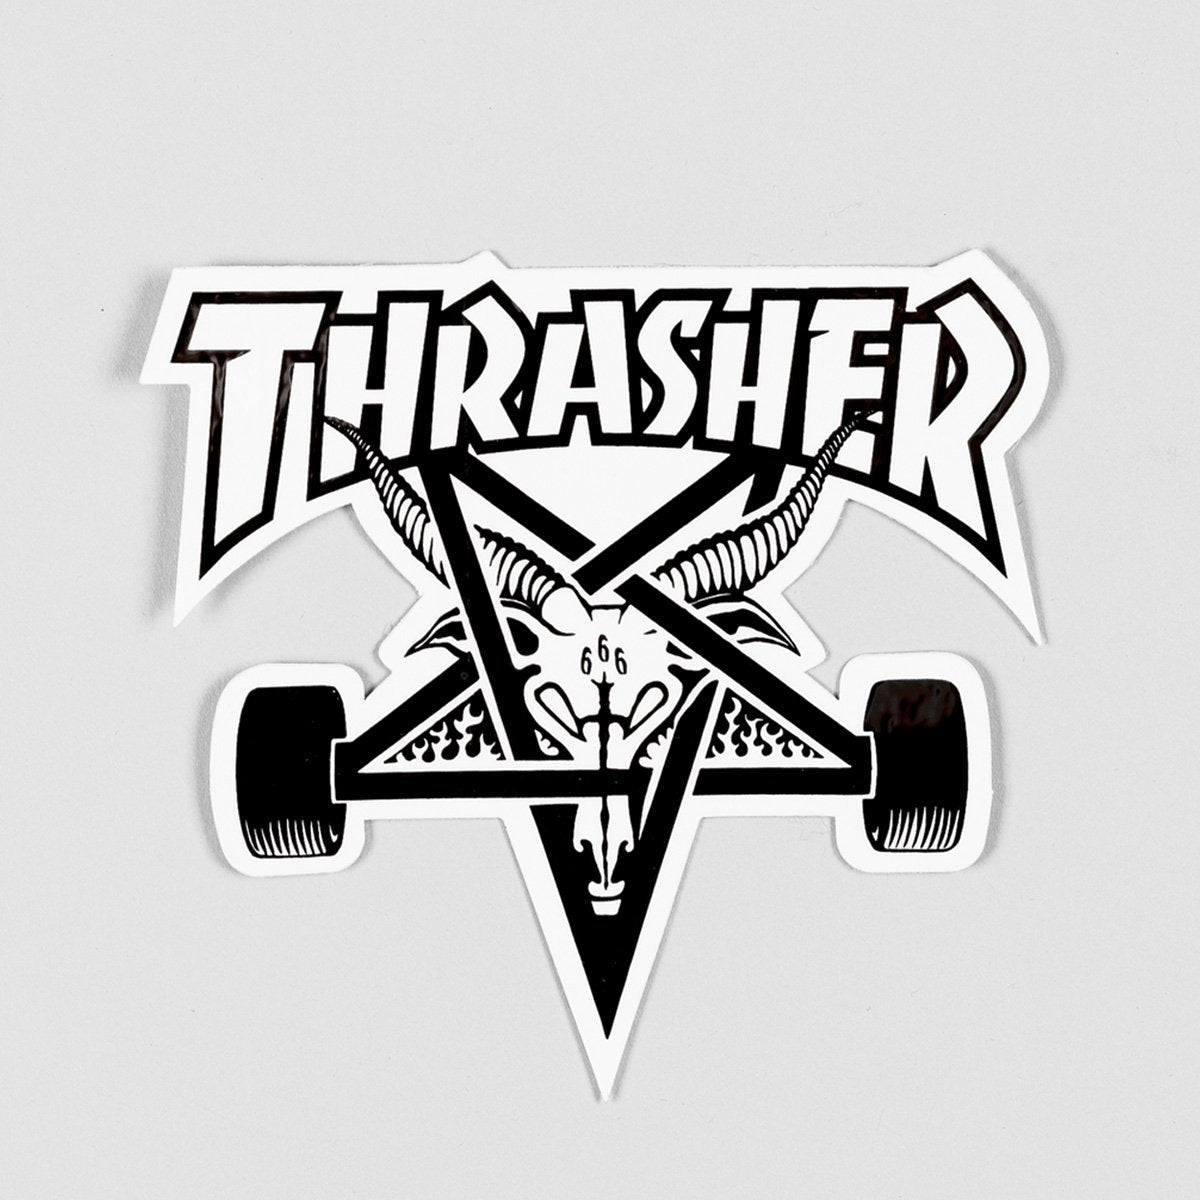 Thrasher Skate Goat Sticker White/Black Medium - Skateboard